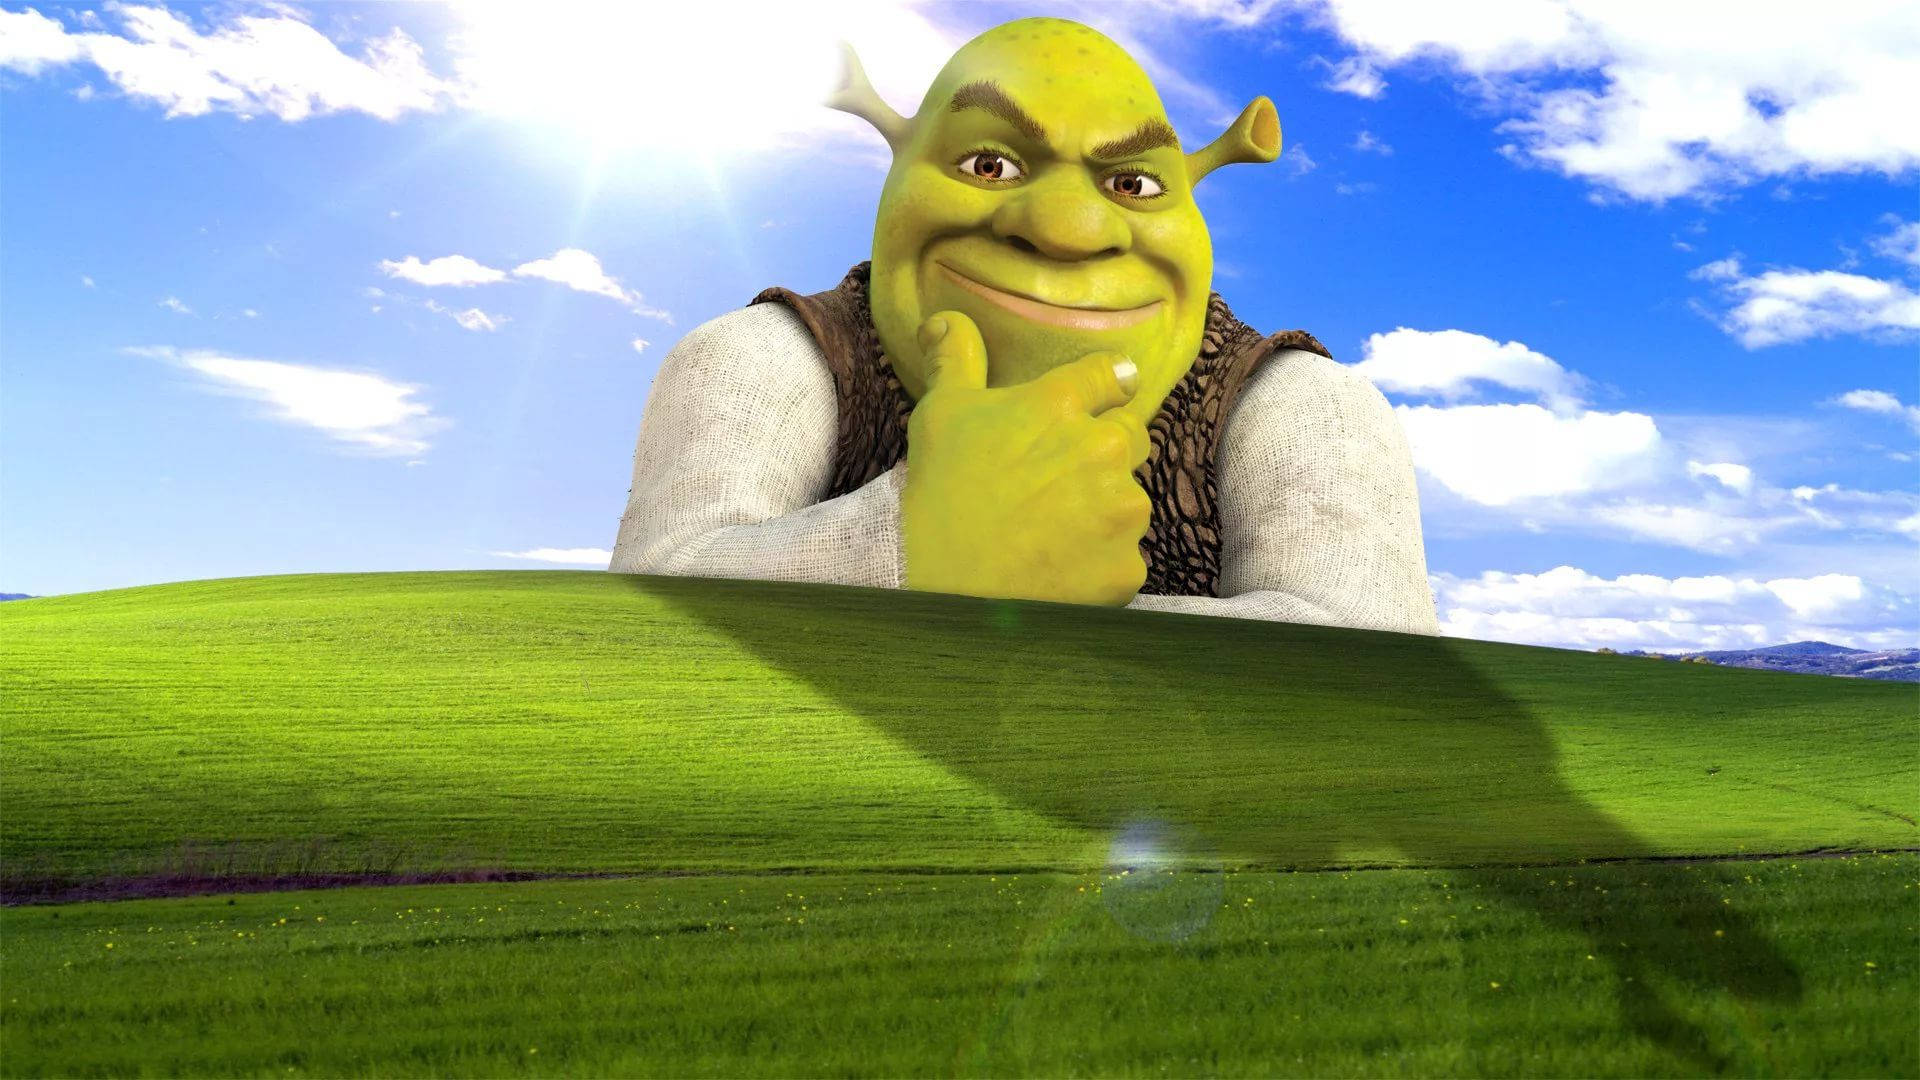 Download Shrek Windows Xp Meme Wallpaper